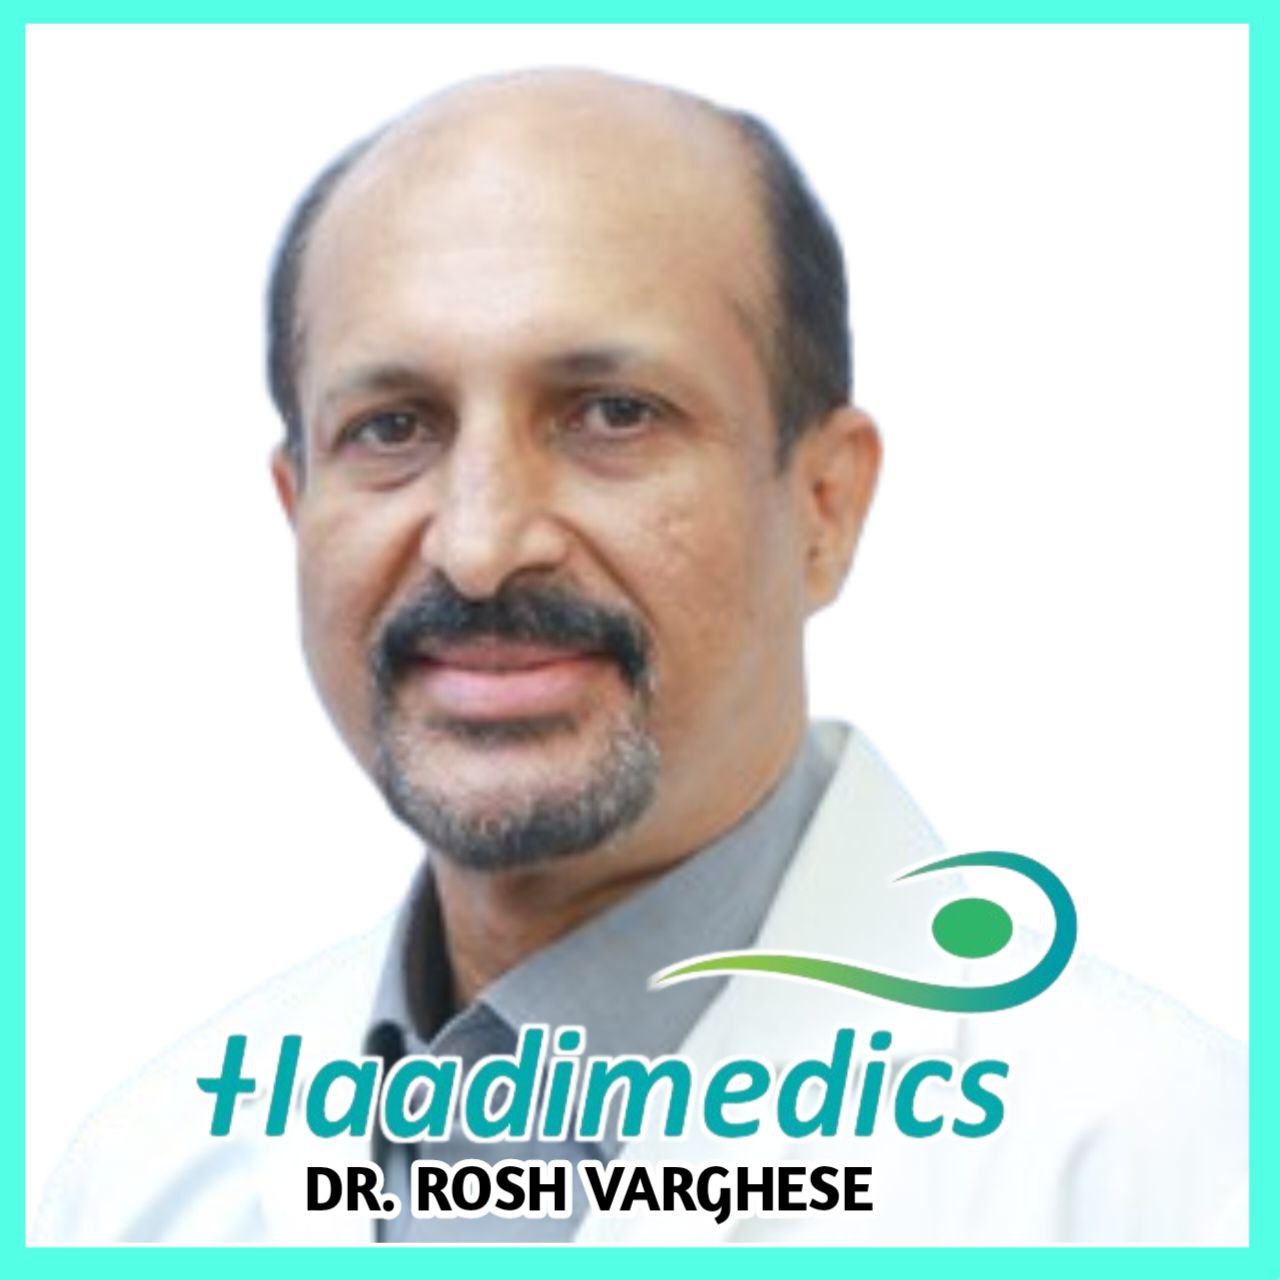 Dr. Rosh Varghese